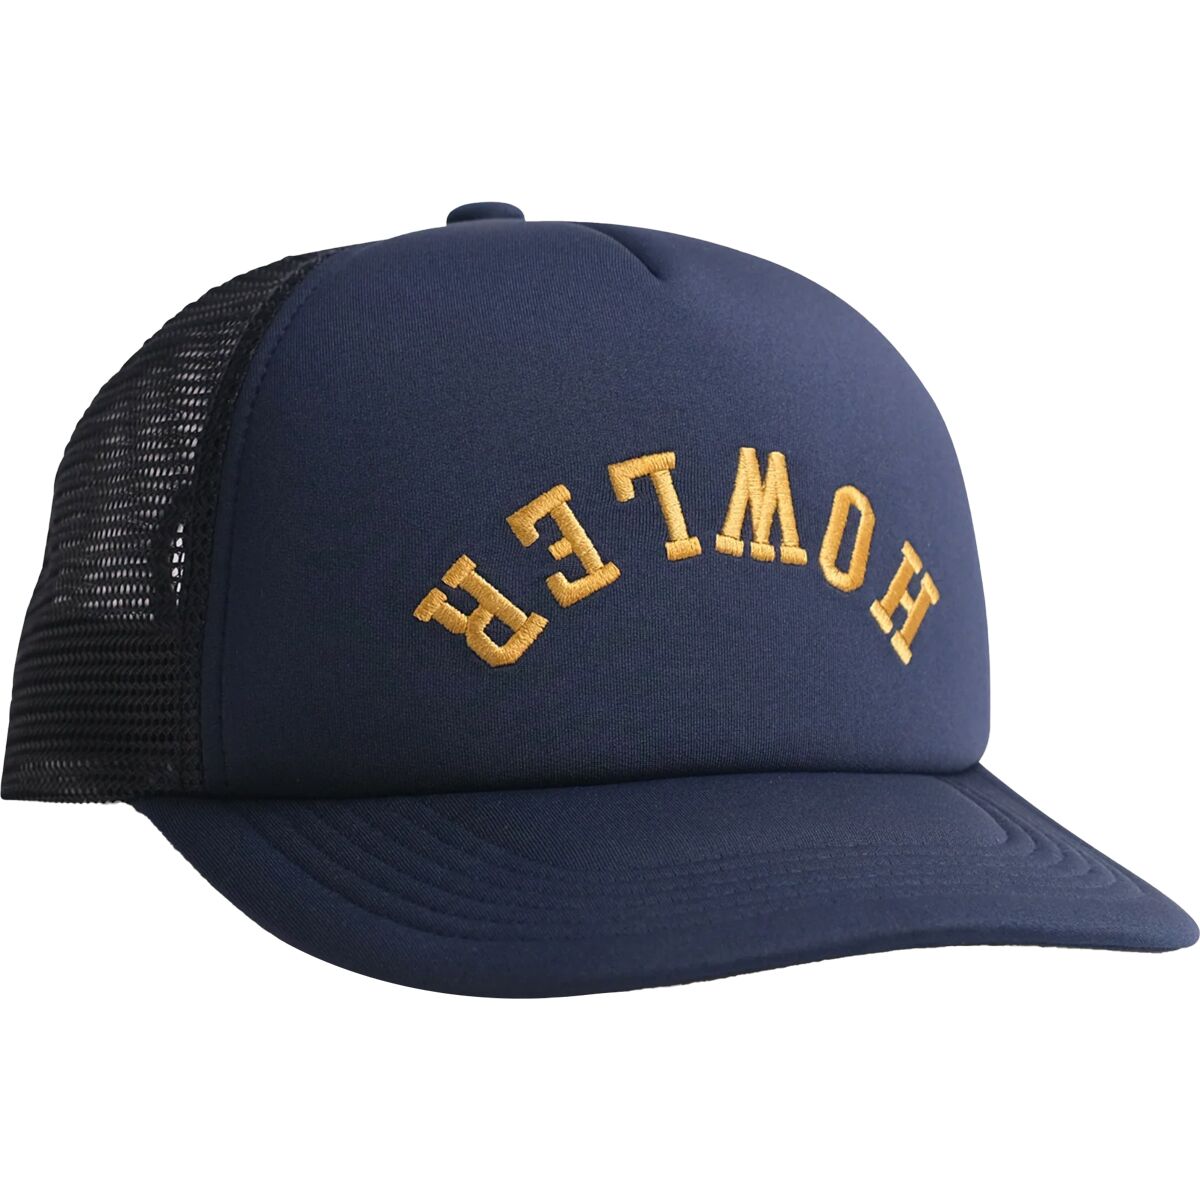 Университетская шапка с куполом из пенопласта Howler Brothers, синий